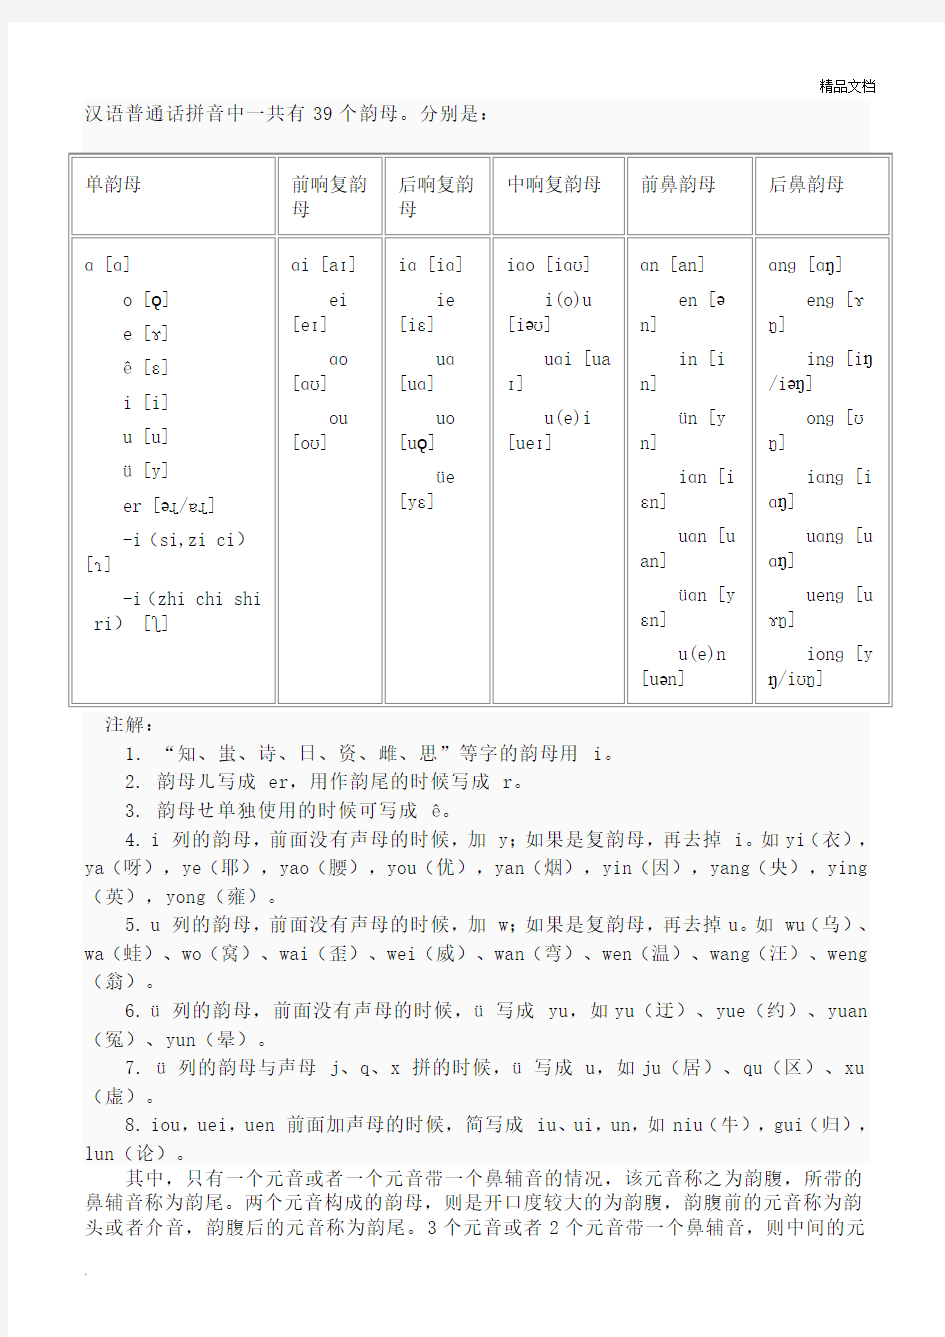 汉语普通话拼音中一共有39个韵母